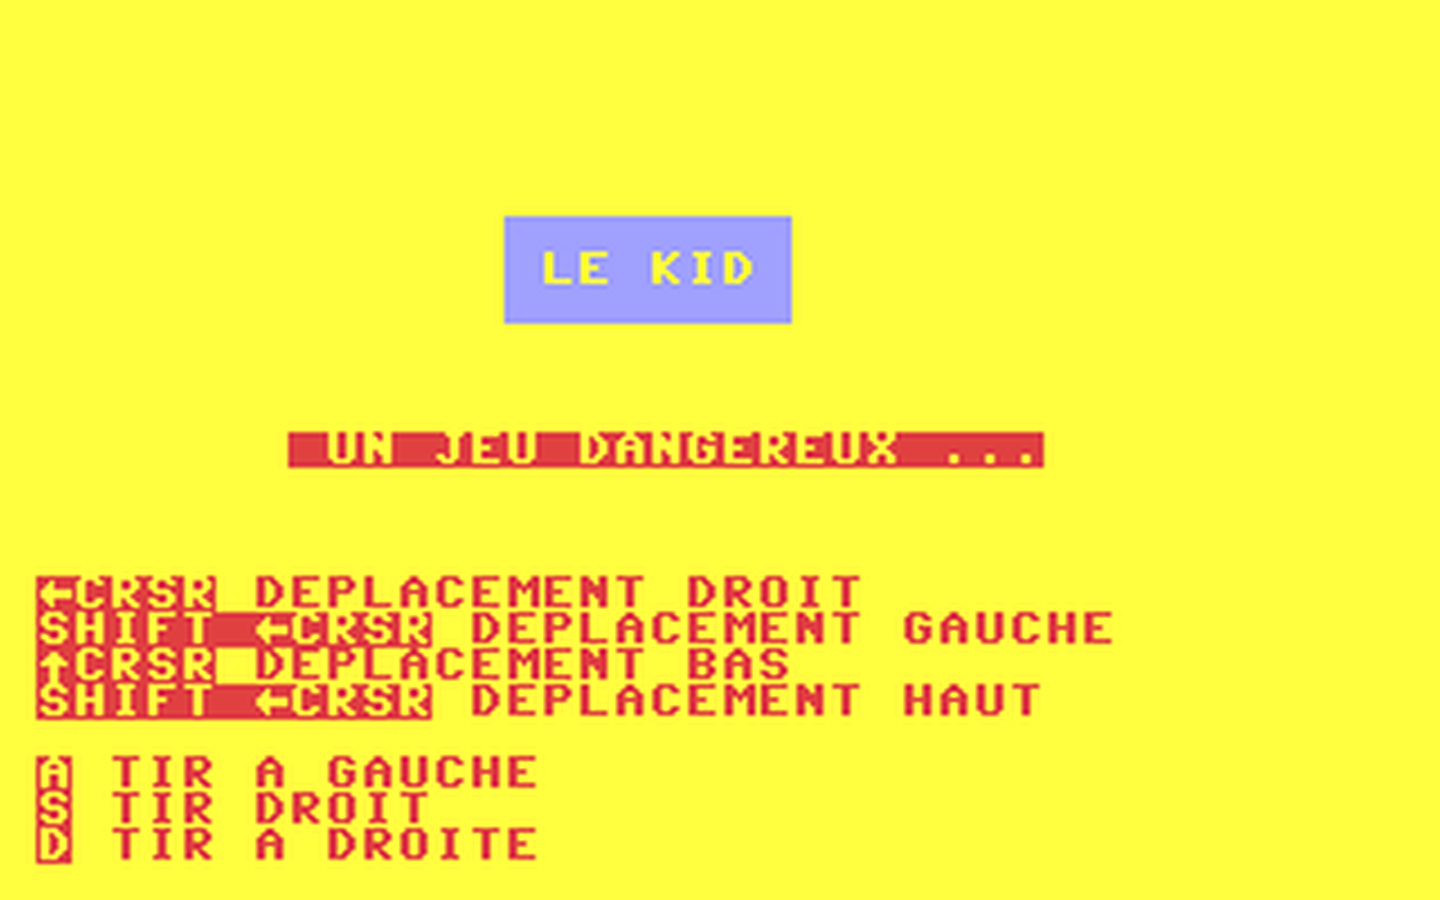 C64 GameBase Kid,_Le Tilt-micro-jeux/Editions_Mondiales_S.A. 1984